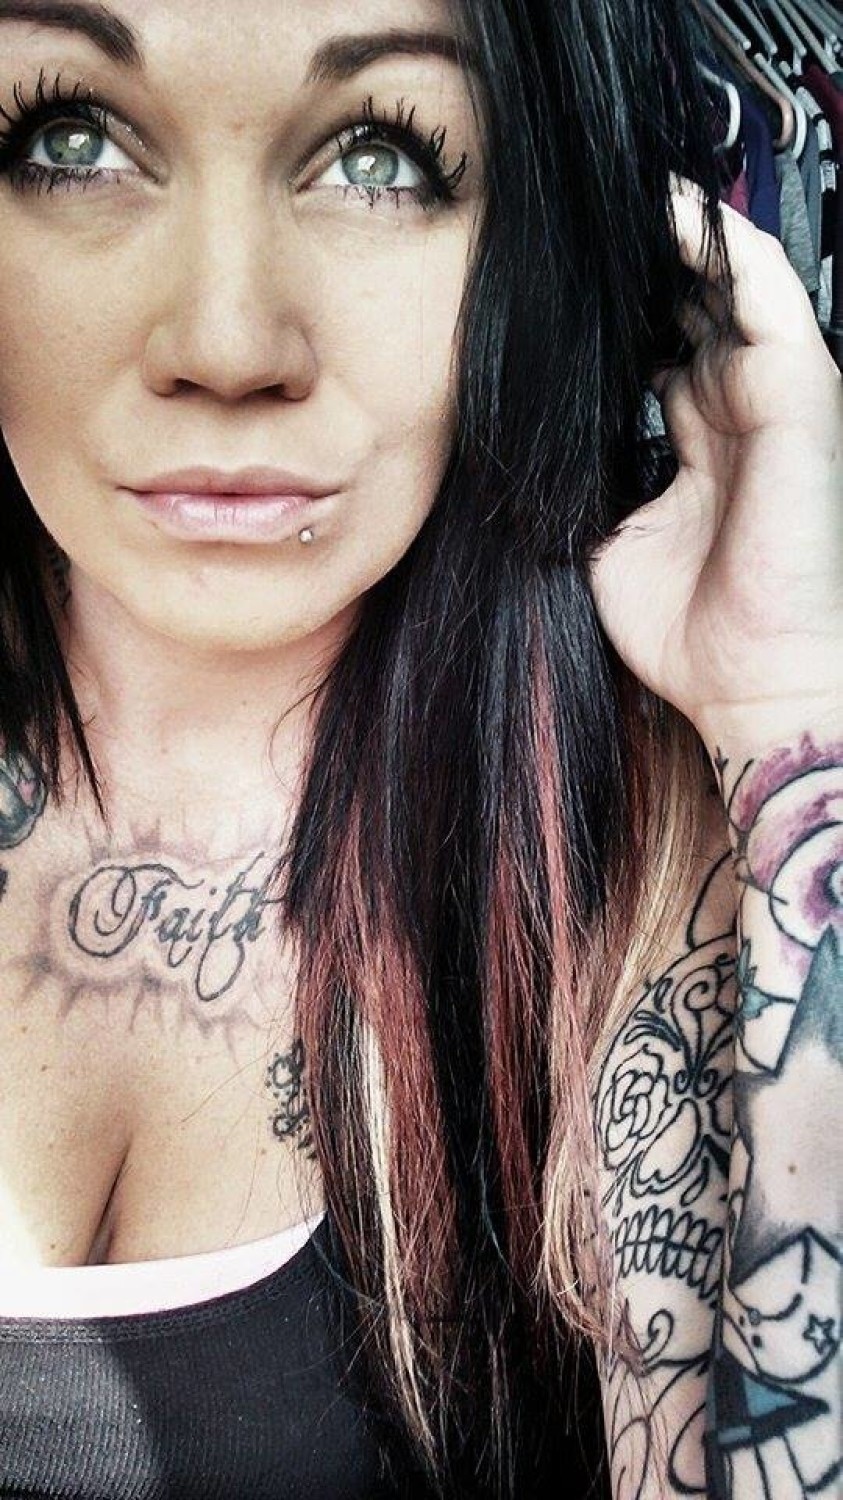 Kobiety z tatuażami. Piękne i seksowne? [ZOBACZ ZDJĘCIA]